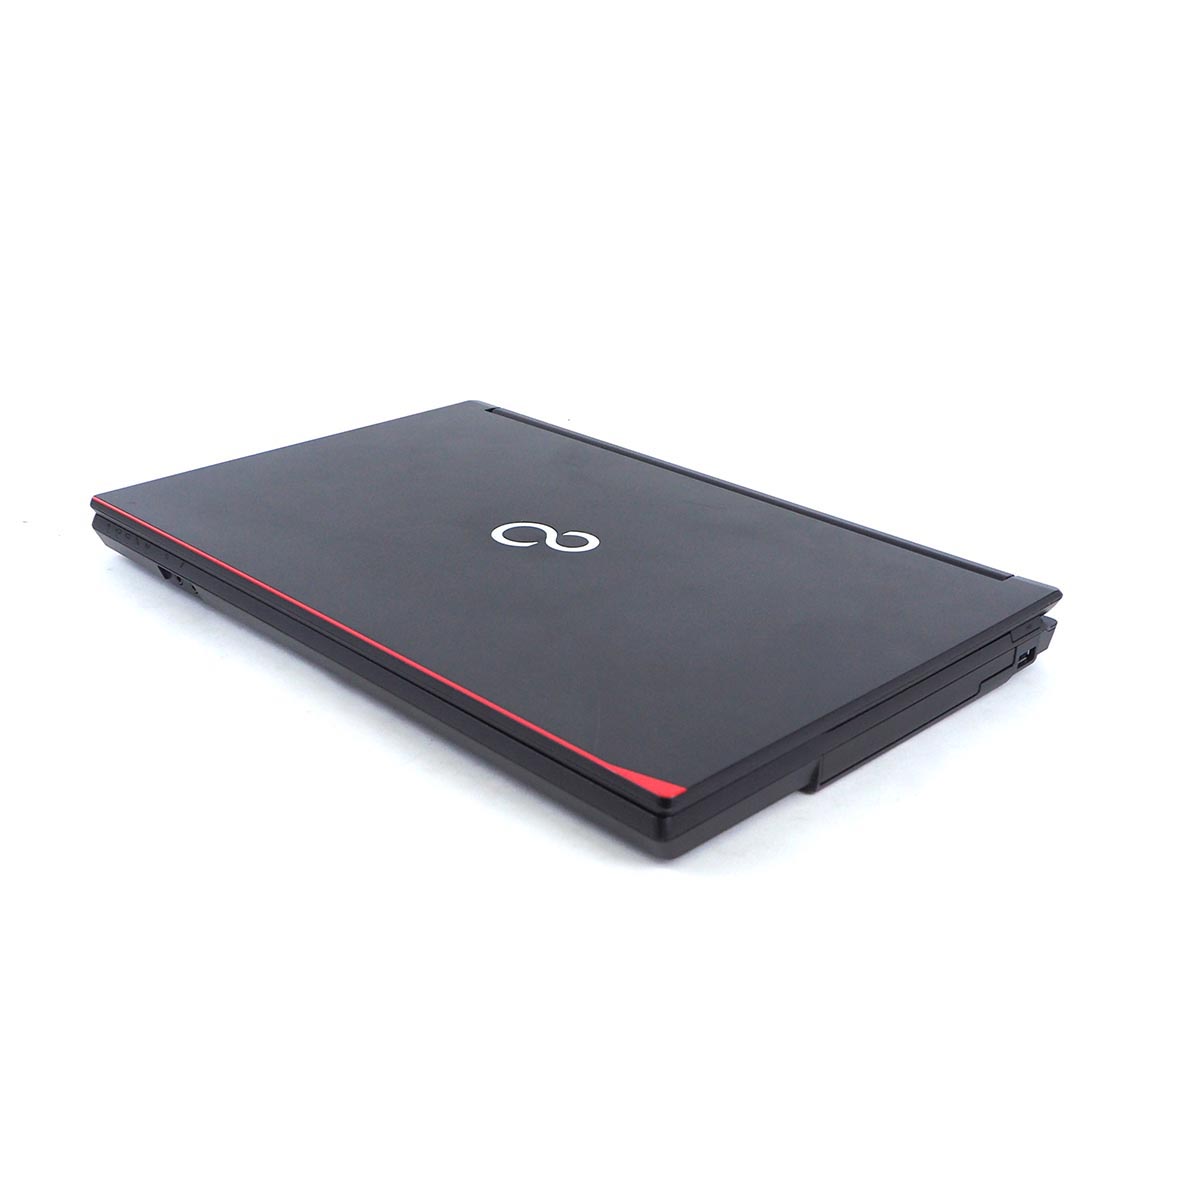 มุมมองเพิ่มเติมของสินค้า โน๊ตบุ๊ค Fu LifeBook A577/R Celeron Gen7 / RAM 4-8GB (DDR4) HDD/SSD หน้าจอ 15.6 นิ้ว คีย์แยก Wifi-Blth ในตัว Refhed laptop used notebook คอมพิวเตอร์ 2022 มีประกัน By Totalsol